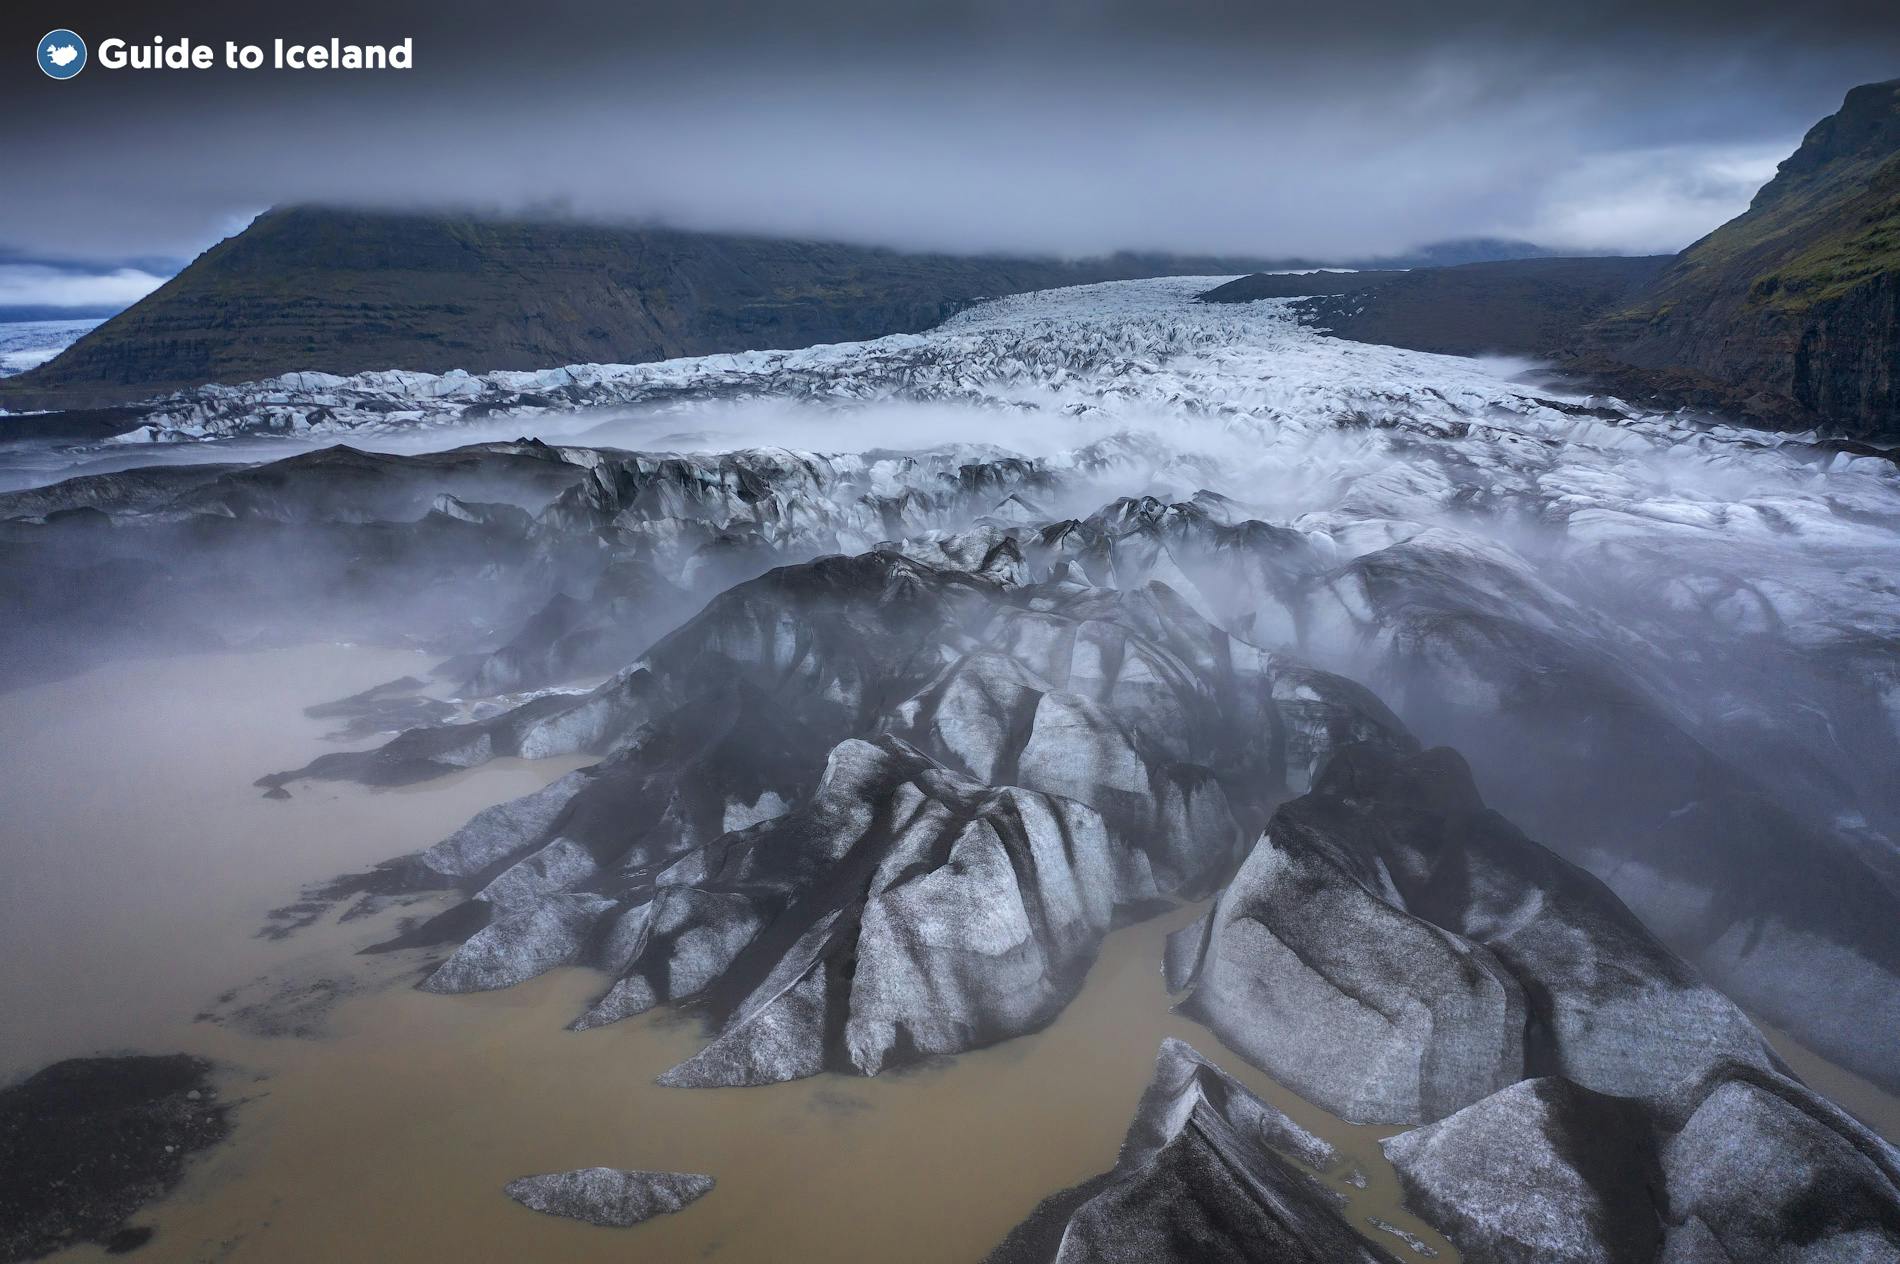 ภาพมุมสูงของผืนน้ำแข็งบนชายฝั่งทางใต้ของไอซ์แลนด์